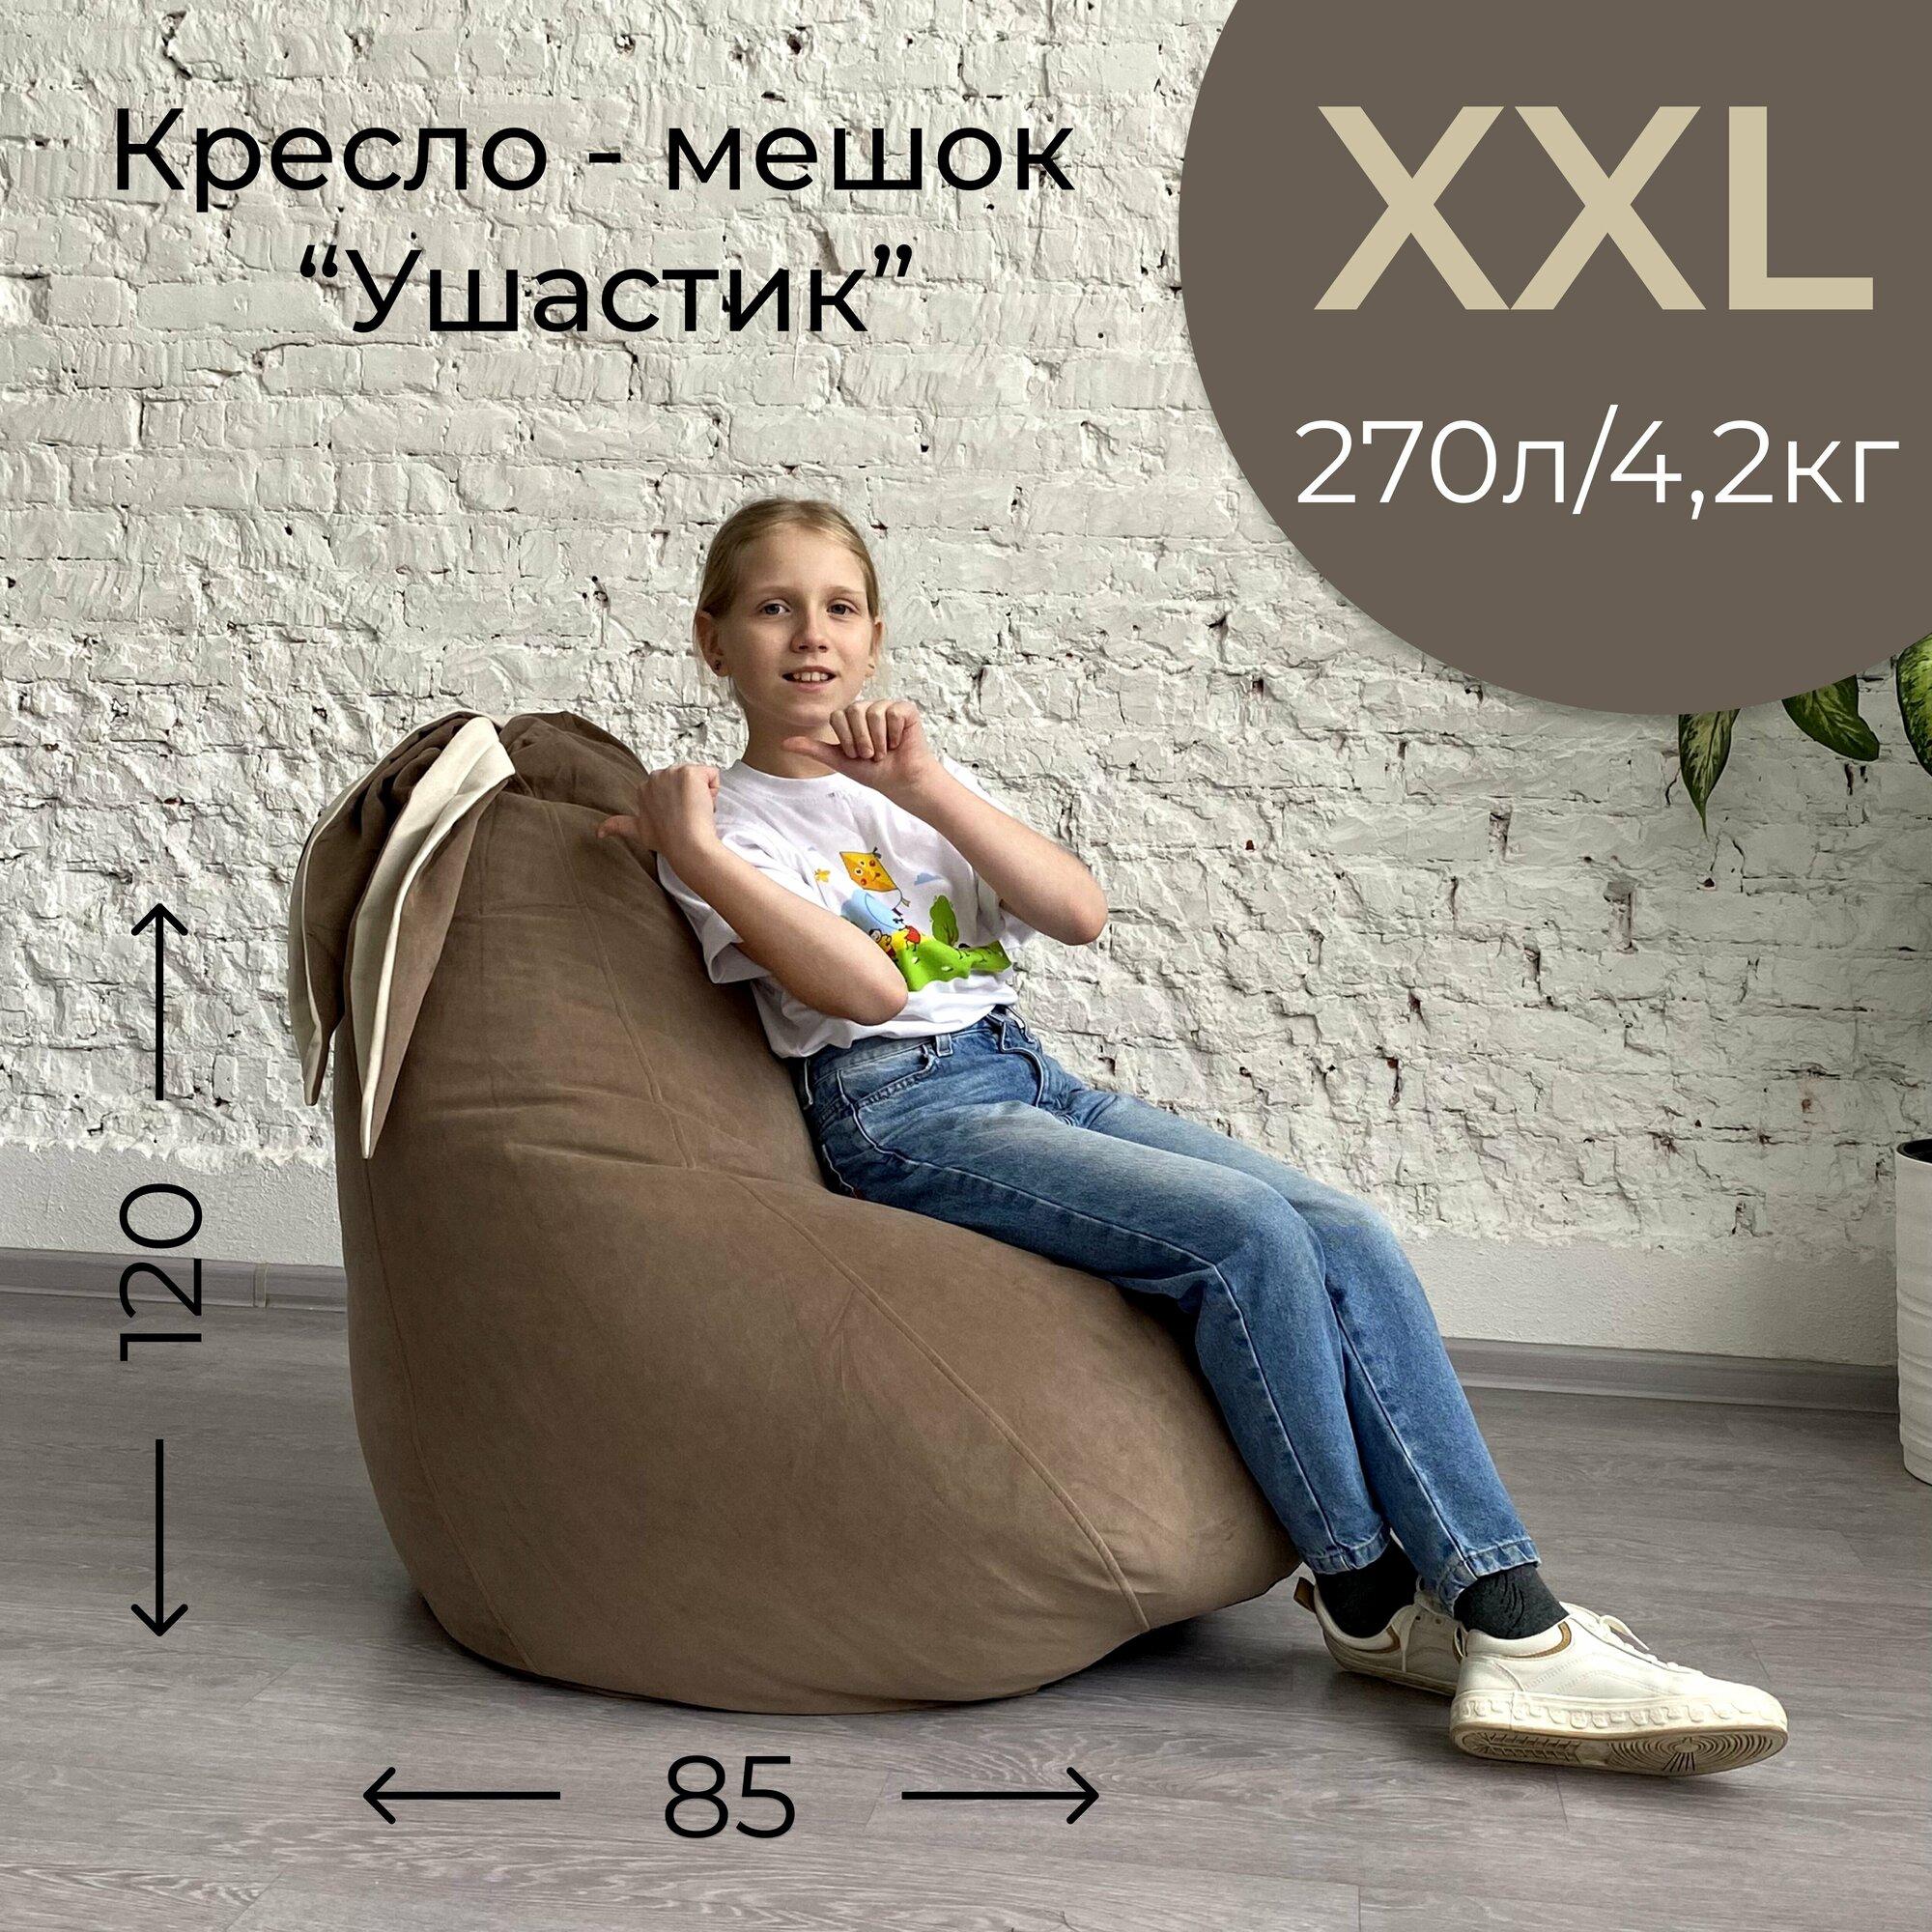 Кресло-мешок кофе с молоком "Ушастик" для детей и взрослых, размер XXL